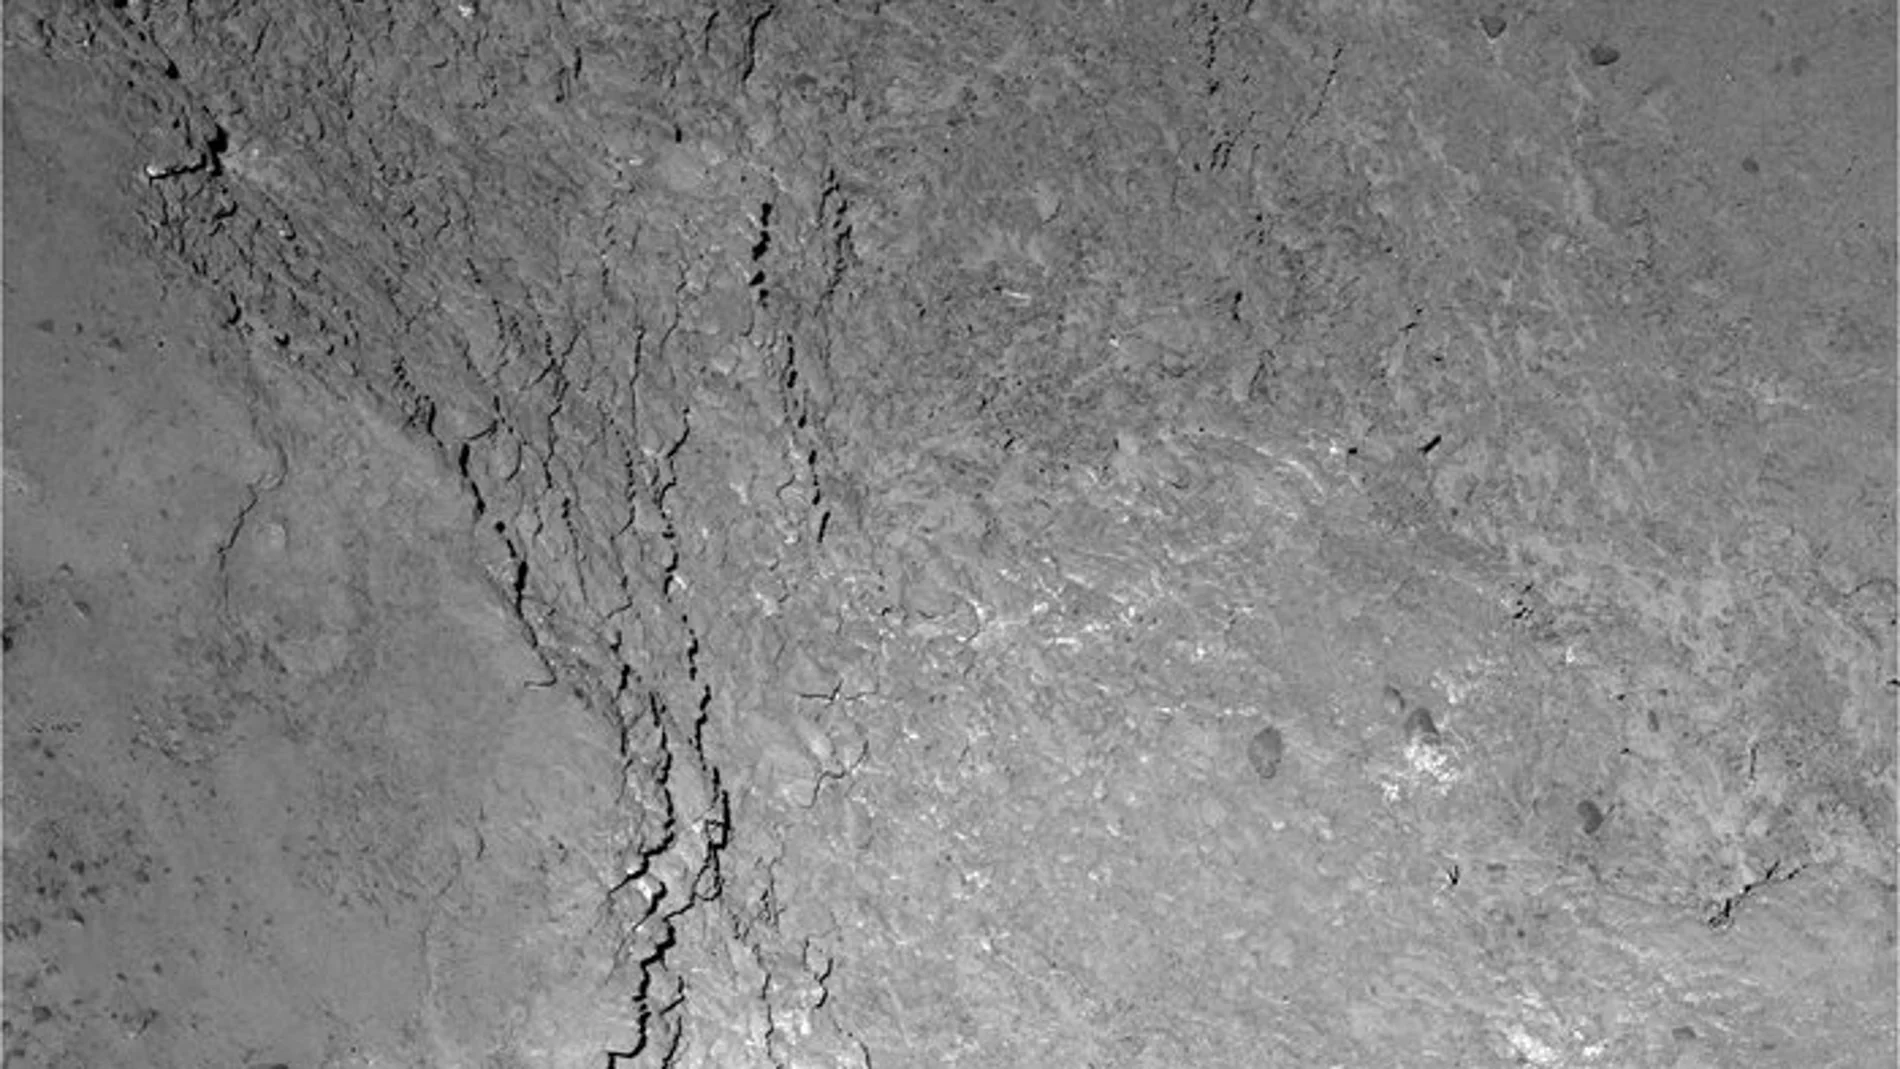 La nave Rosetta envía una foto de su propia sombra sobre el cometa 67P